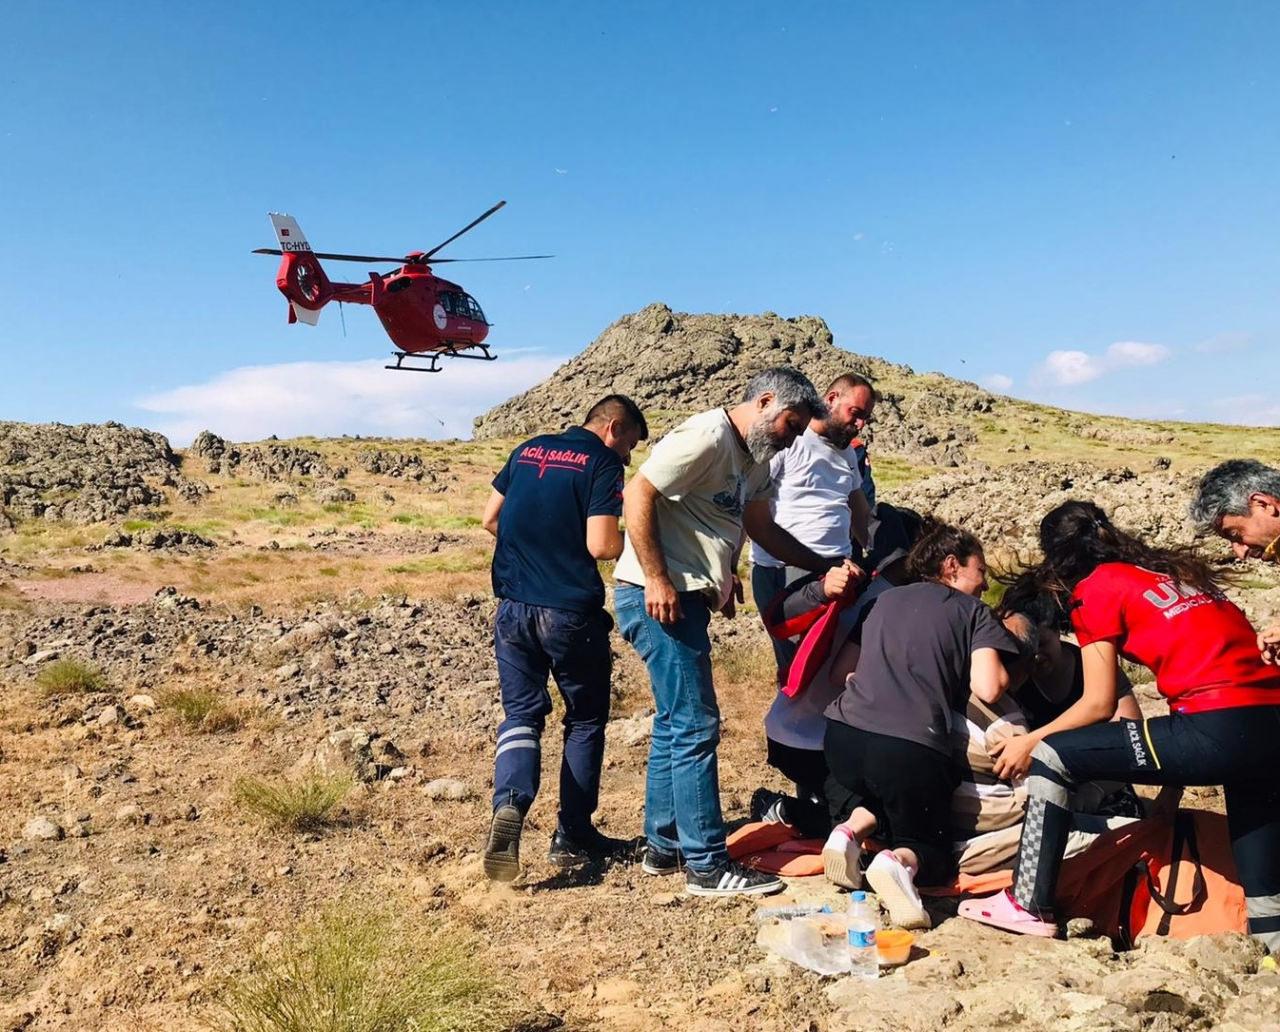 Tunceli'de ayak bileği kırılan kişi için ambulans helikopter kalktı